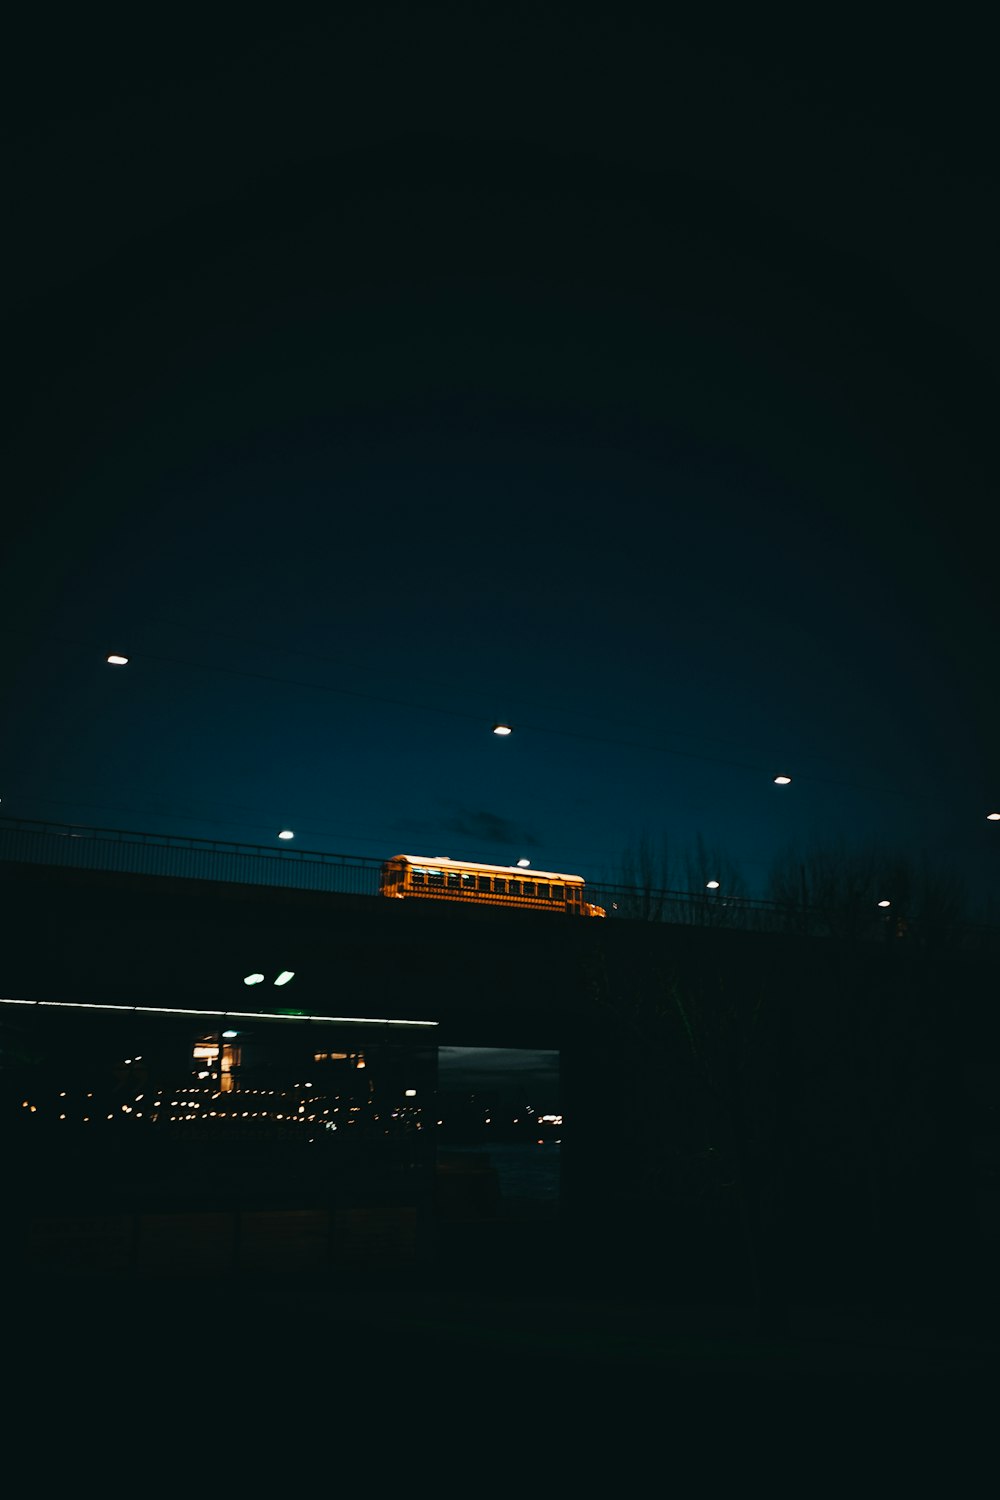 un train traversant un pont la nuit